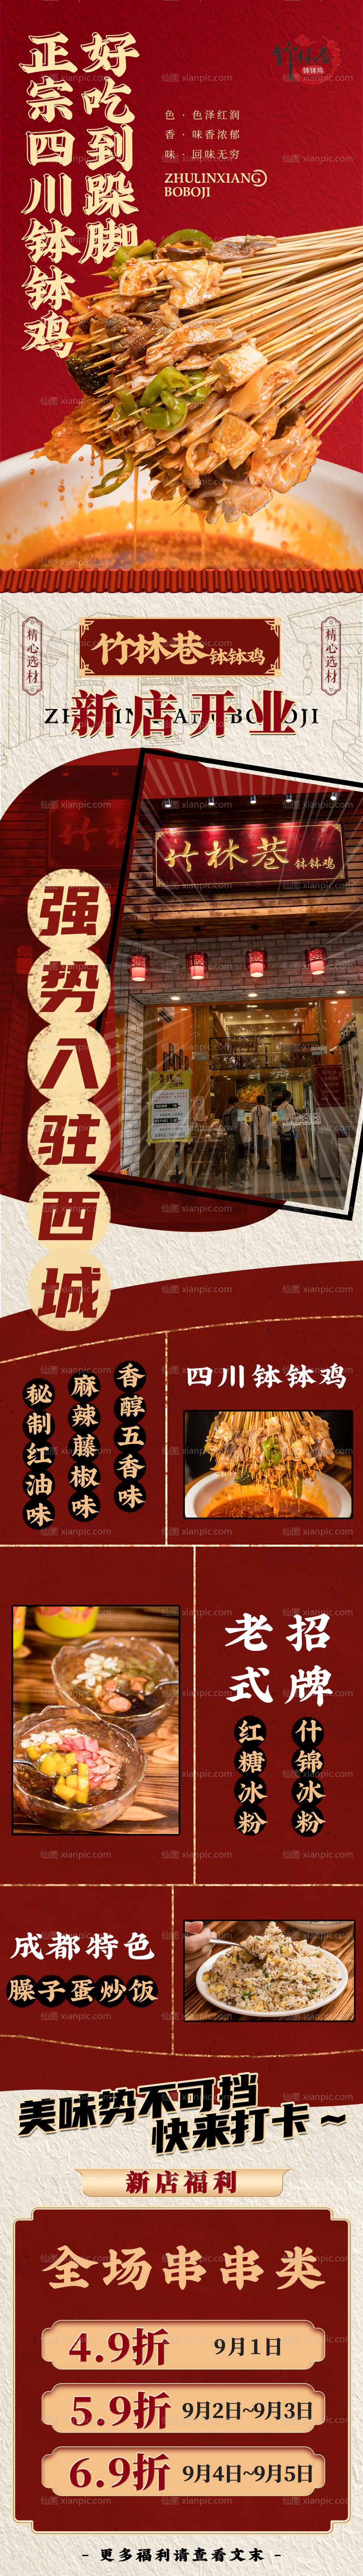 仙图网-海报设计餐饮